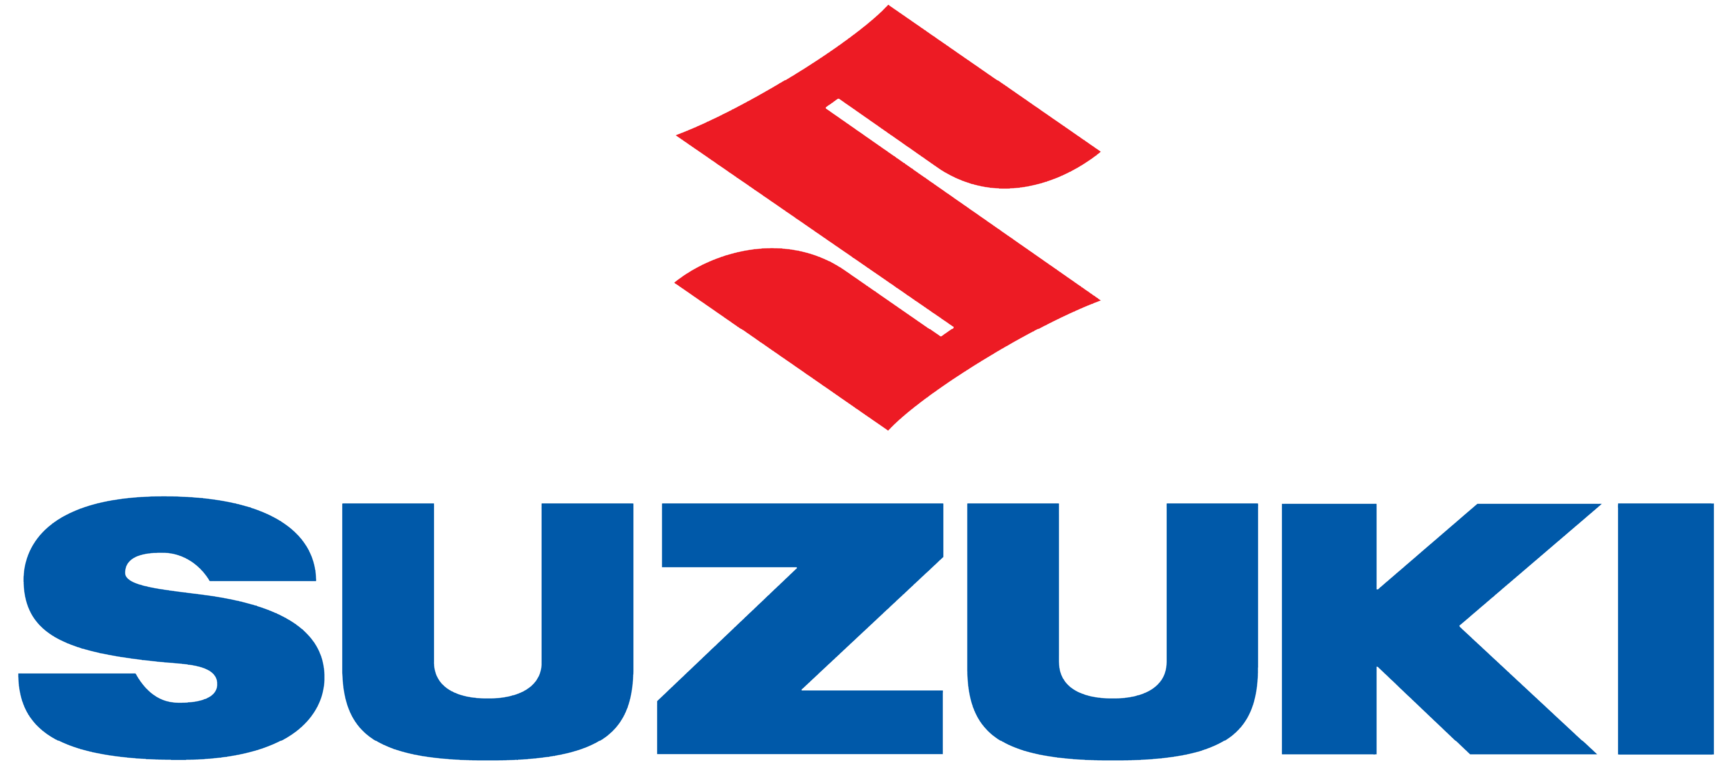 Suzuki-logo-5000x2500